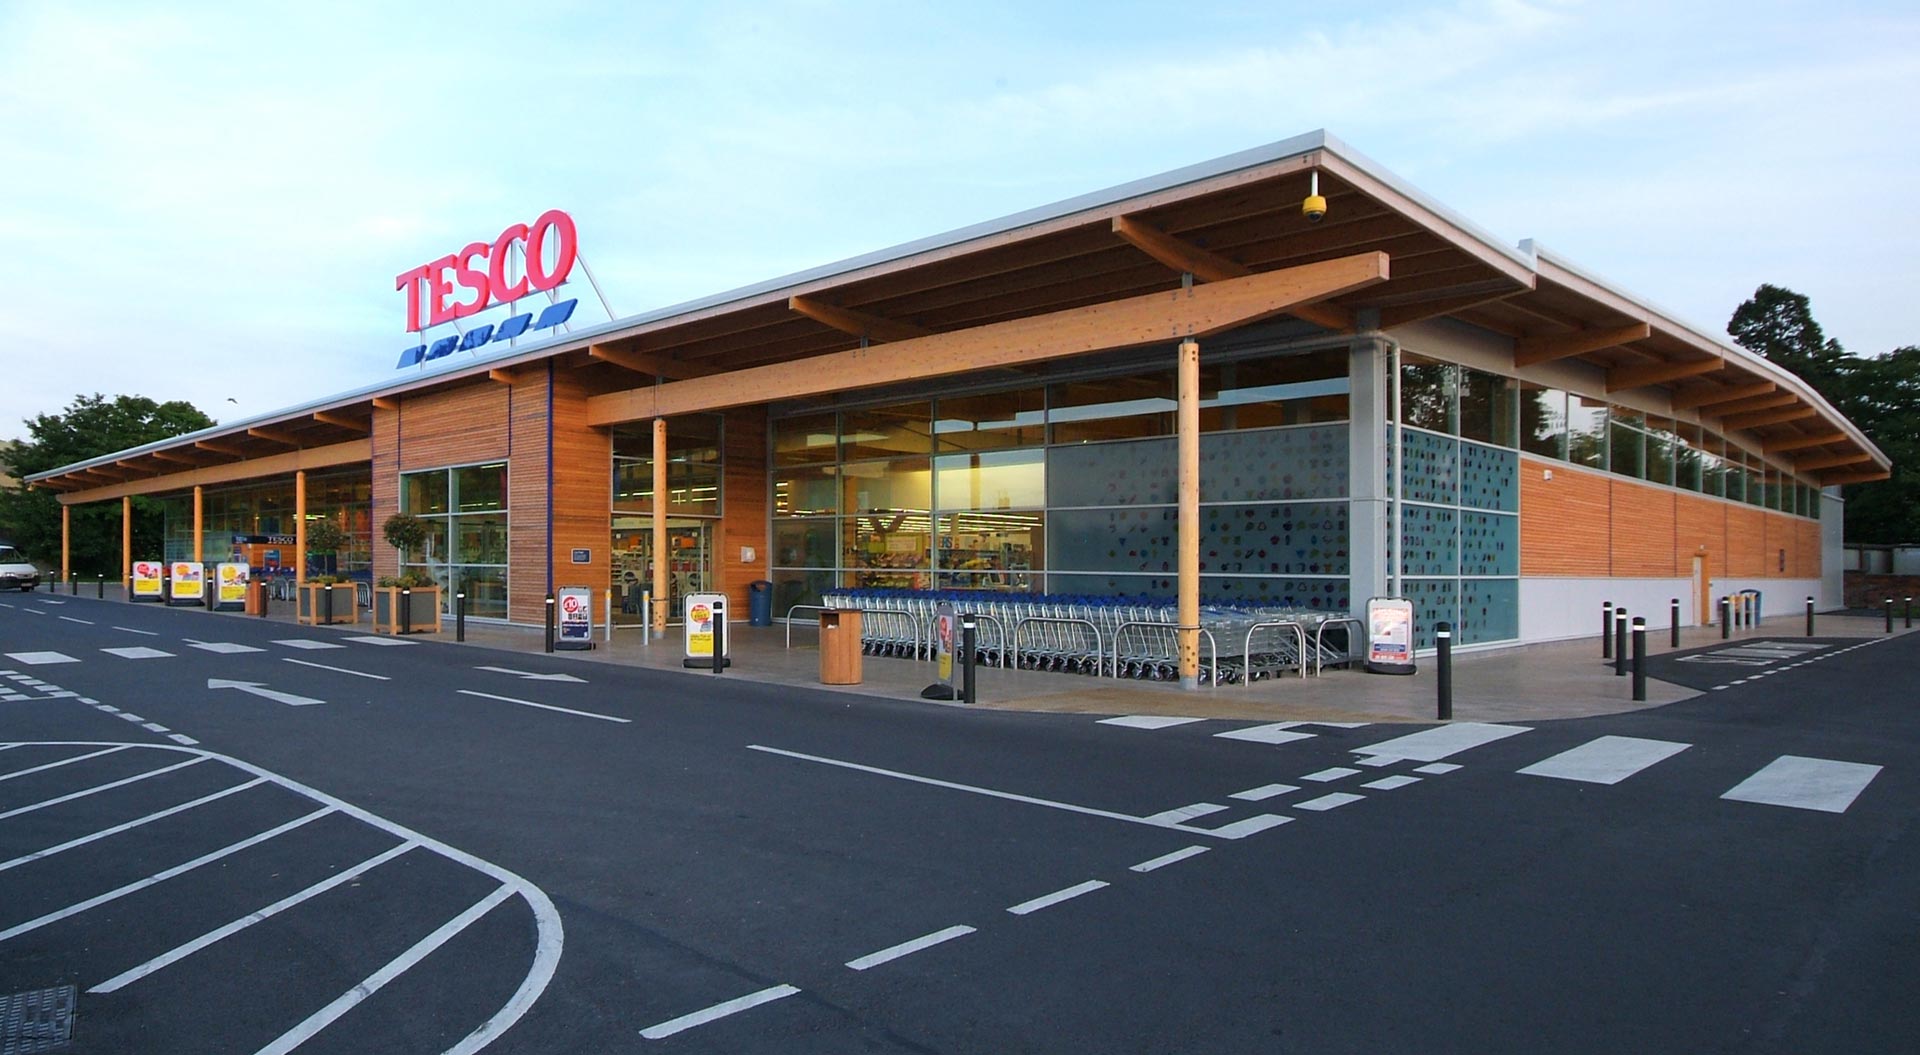 Tesco supermarket welshpool store design and branding